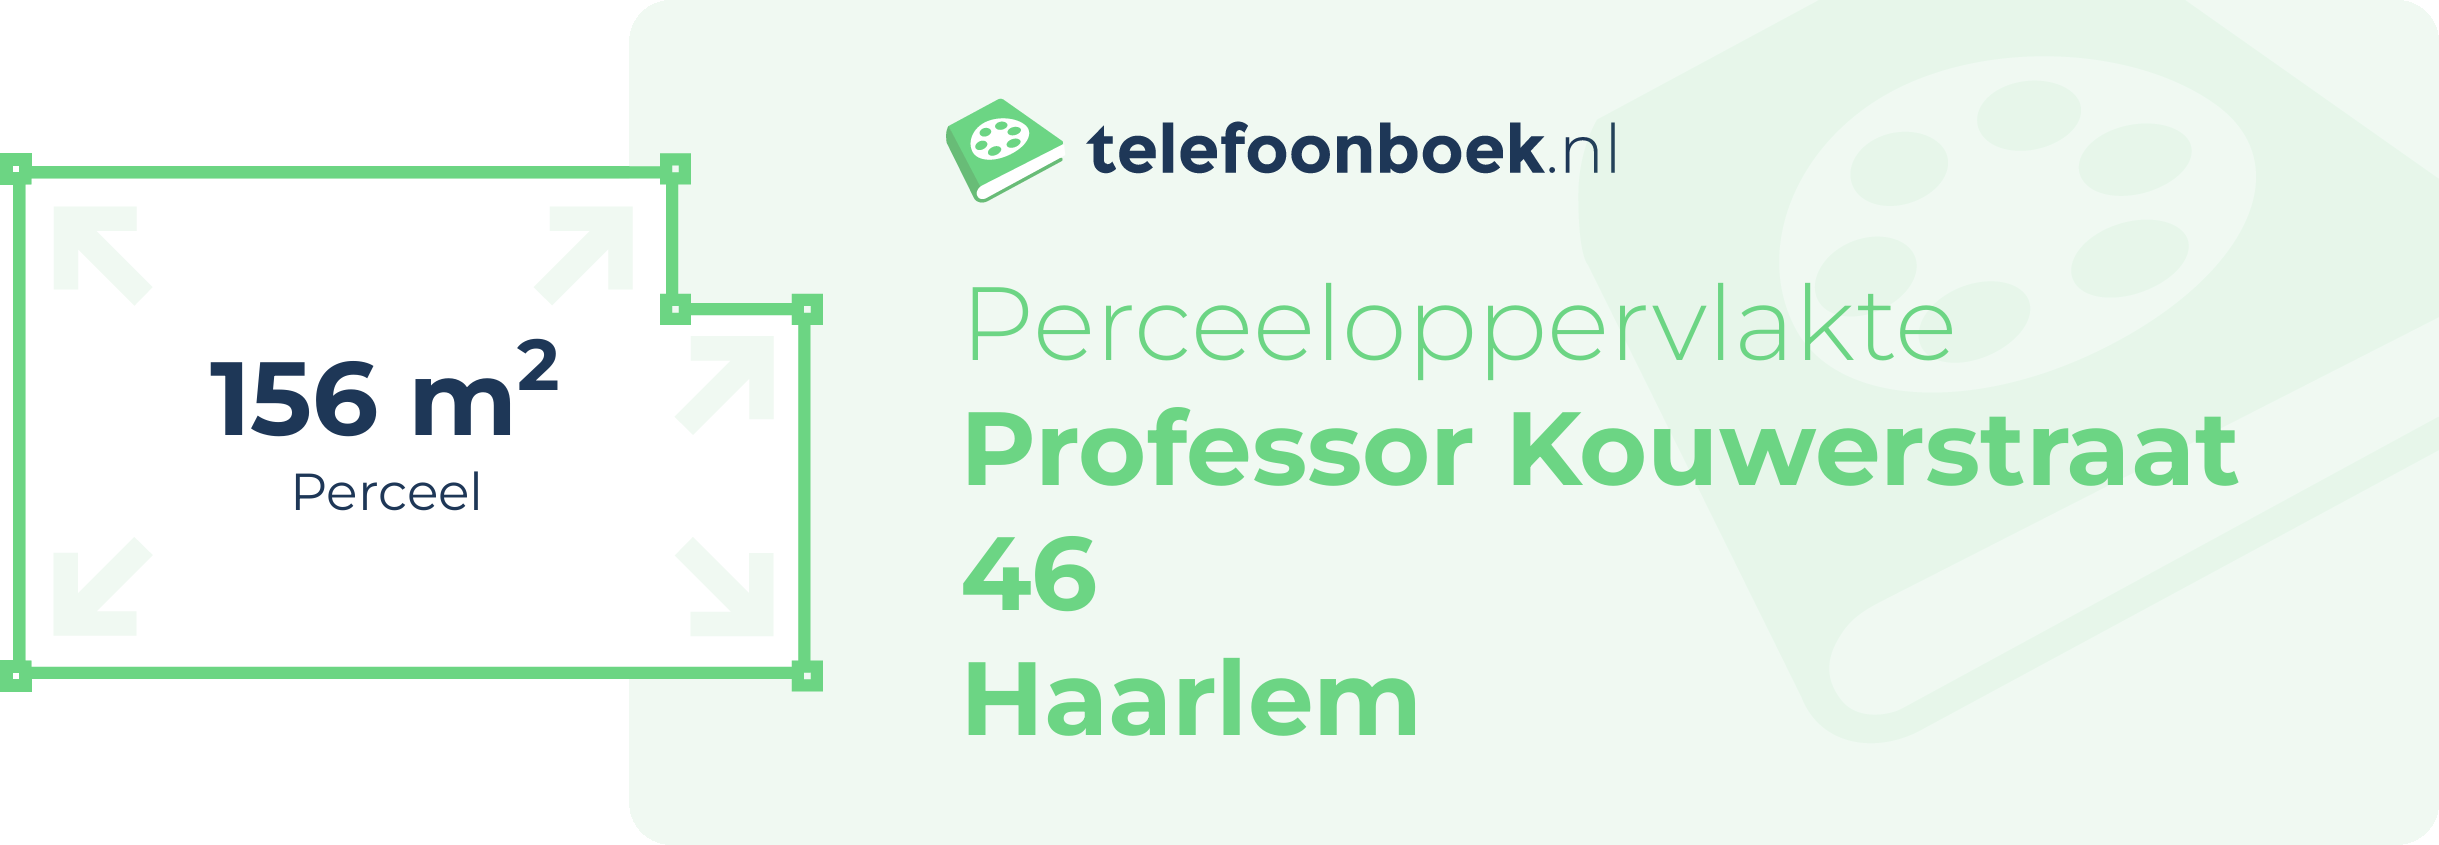 Perceeloppervlakte Professor Kouwerstraat 46 Haarlem